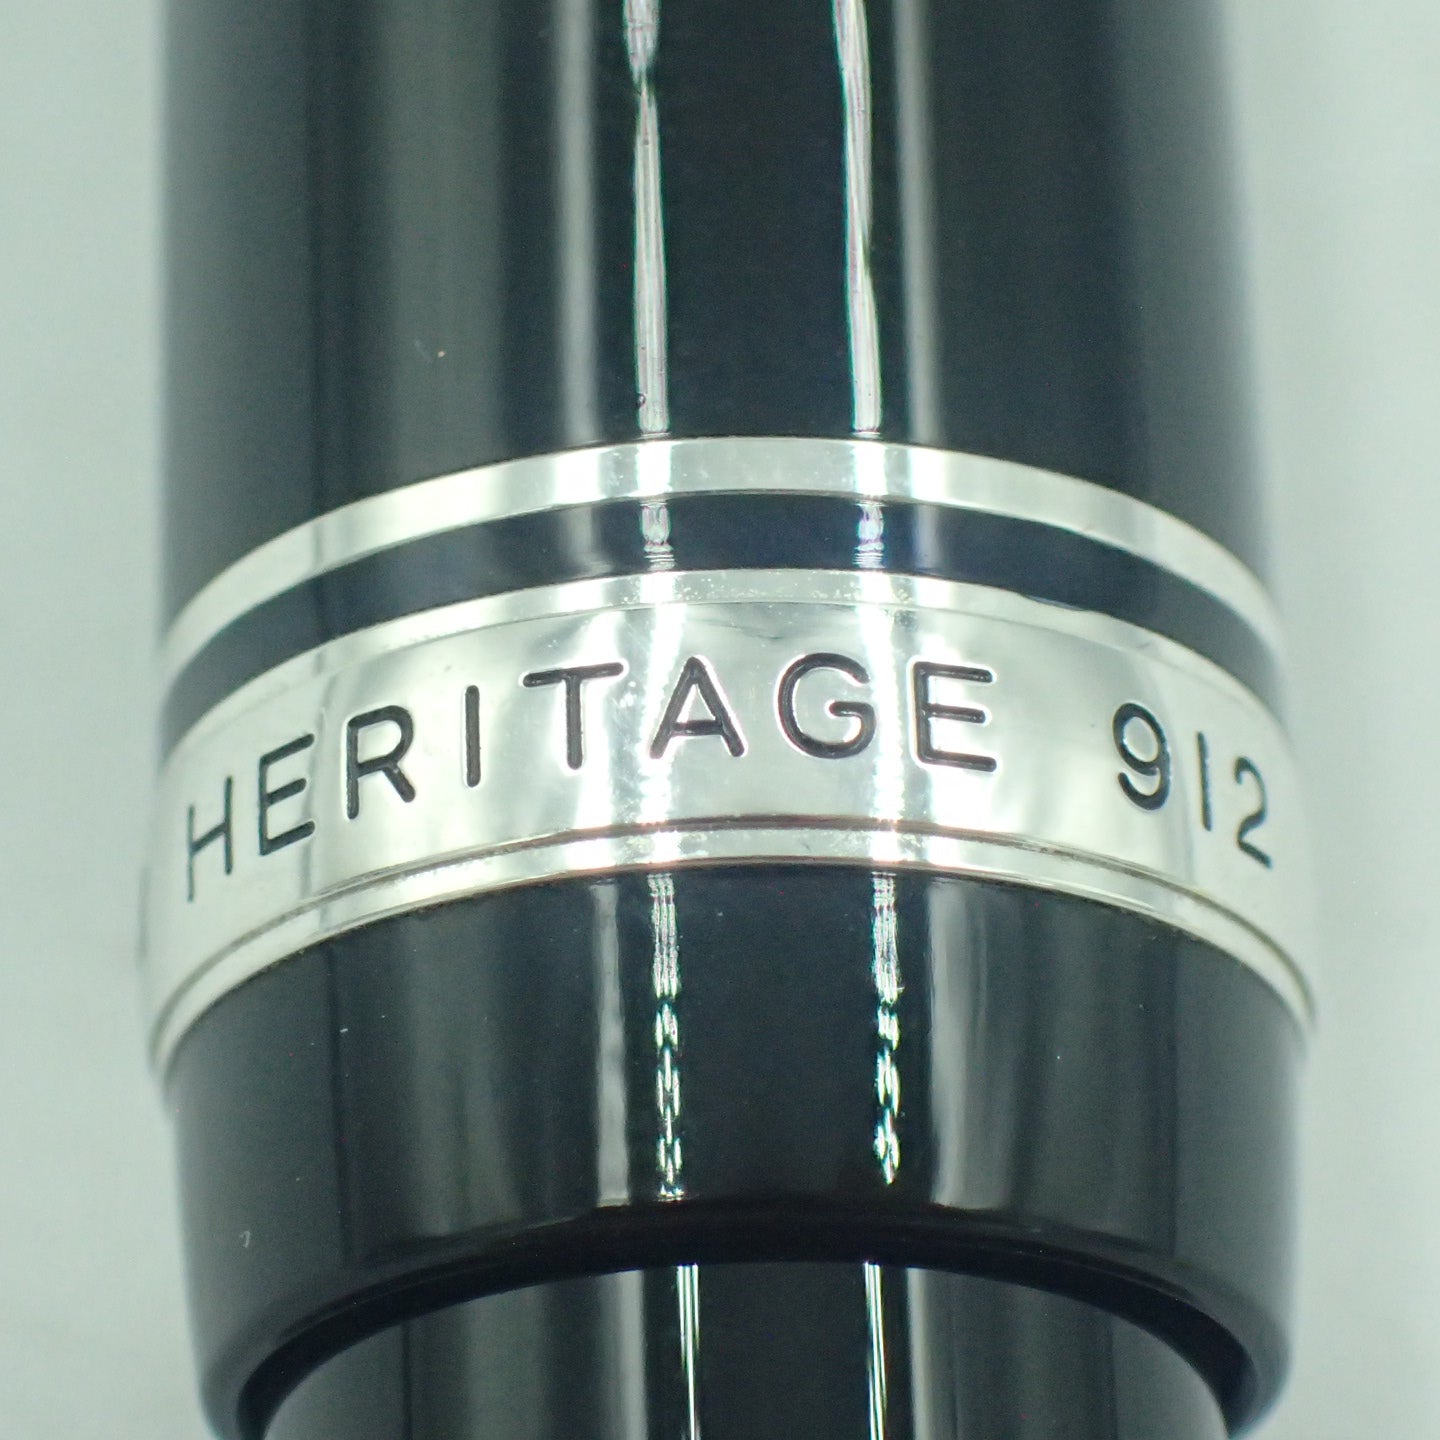 跟新一样◆Pilot 钢笔 Custom Heritage 912 FKVH2MR-B 14K 585 黑色 x 银色带墨盒 PILOT [AFI5] 